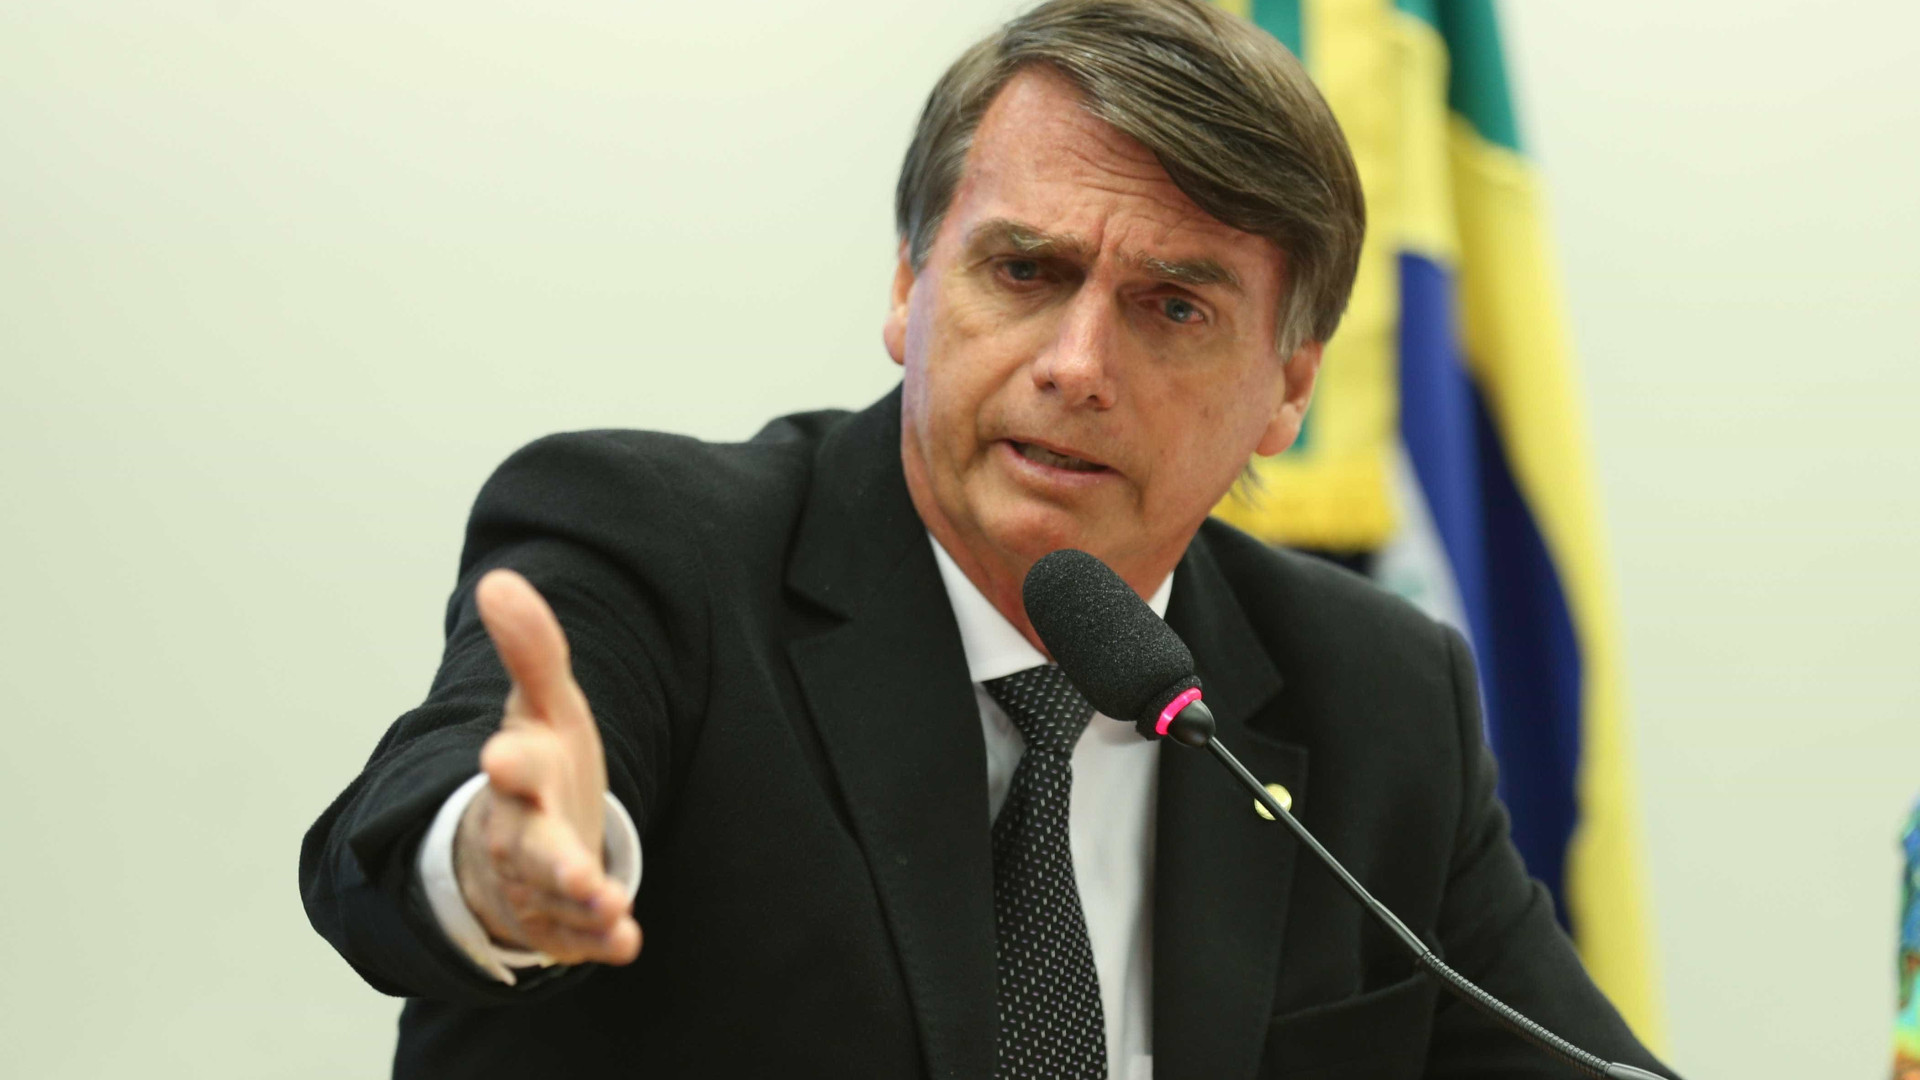 Chamado de fascista, Bolsonaro ataca jornalista: 'Você queima a rosca?'